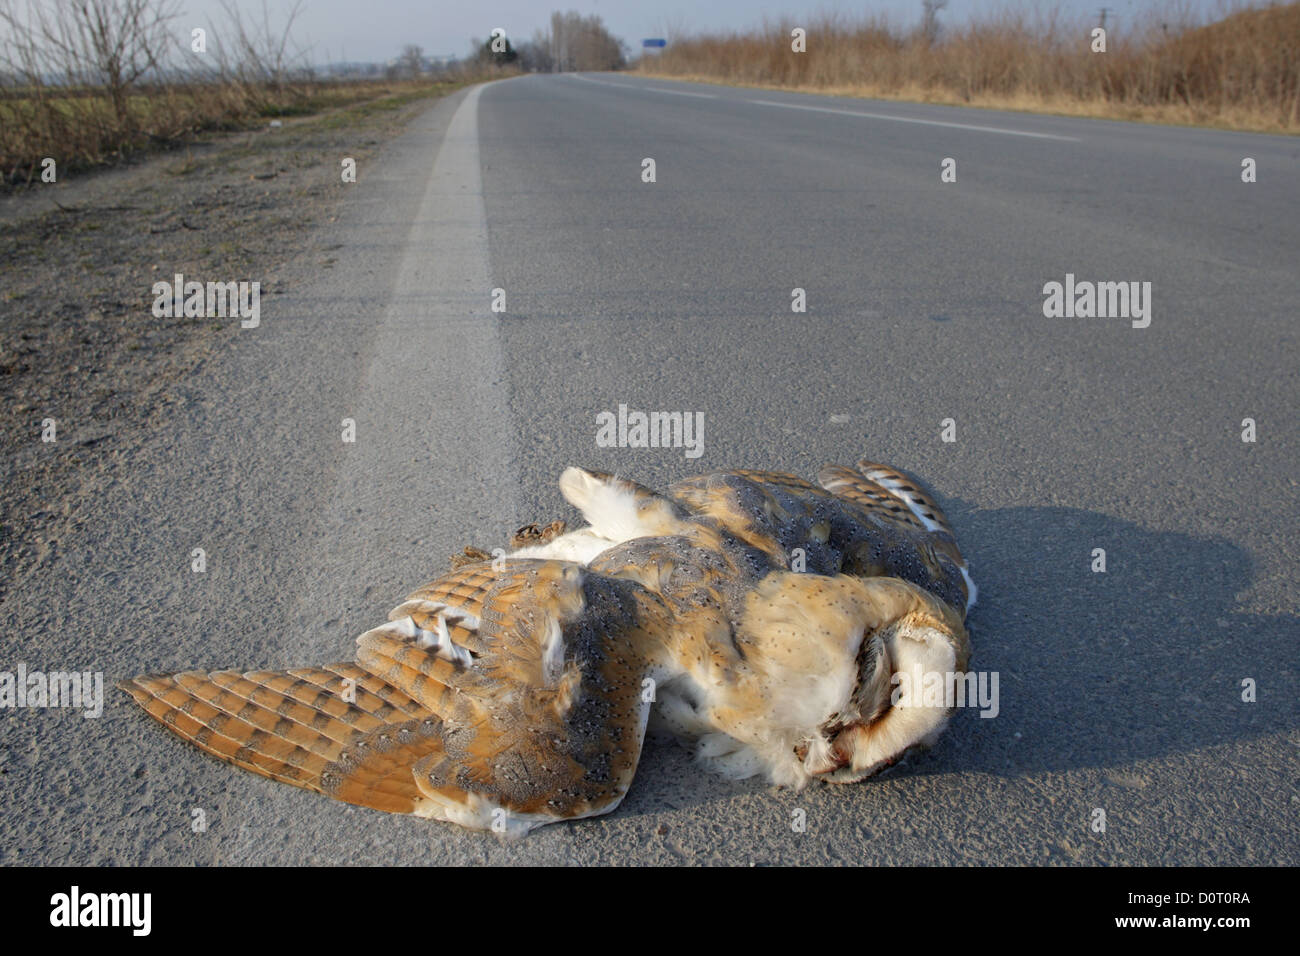 Pájaro muerto en la carretera,víctima de tráfico, Bulgaria Foto de stock